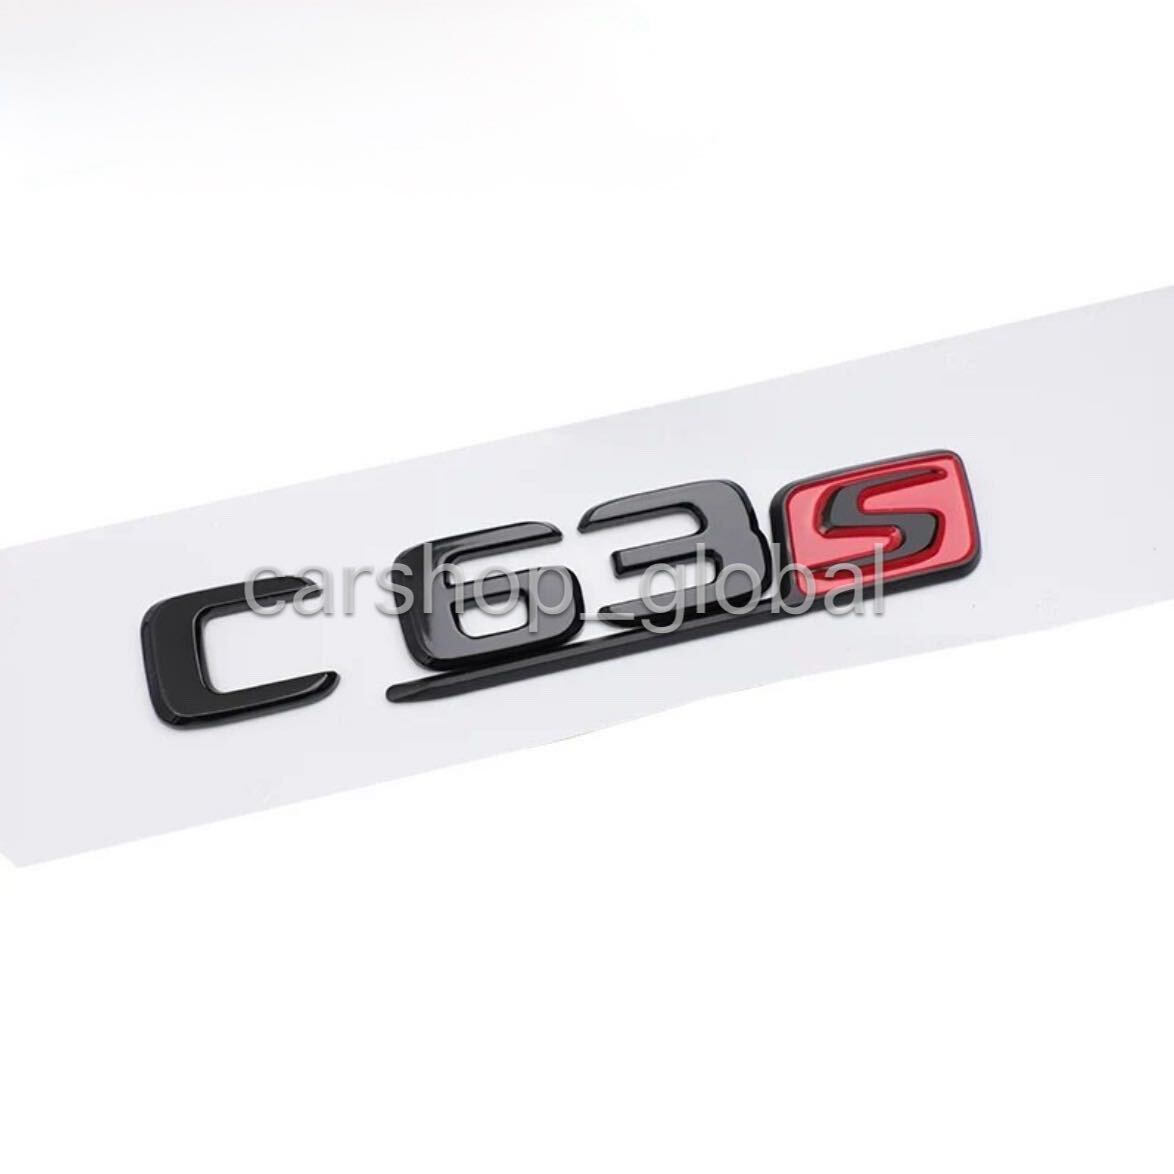 ベンツ Cクラス C63S リア トランクエンブレム グロスブラック×Sグロスブラックレッド ステッカー フラット文字 W205/S205/C205/W204/AMG_画像1